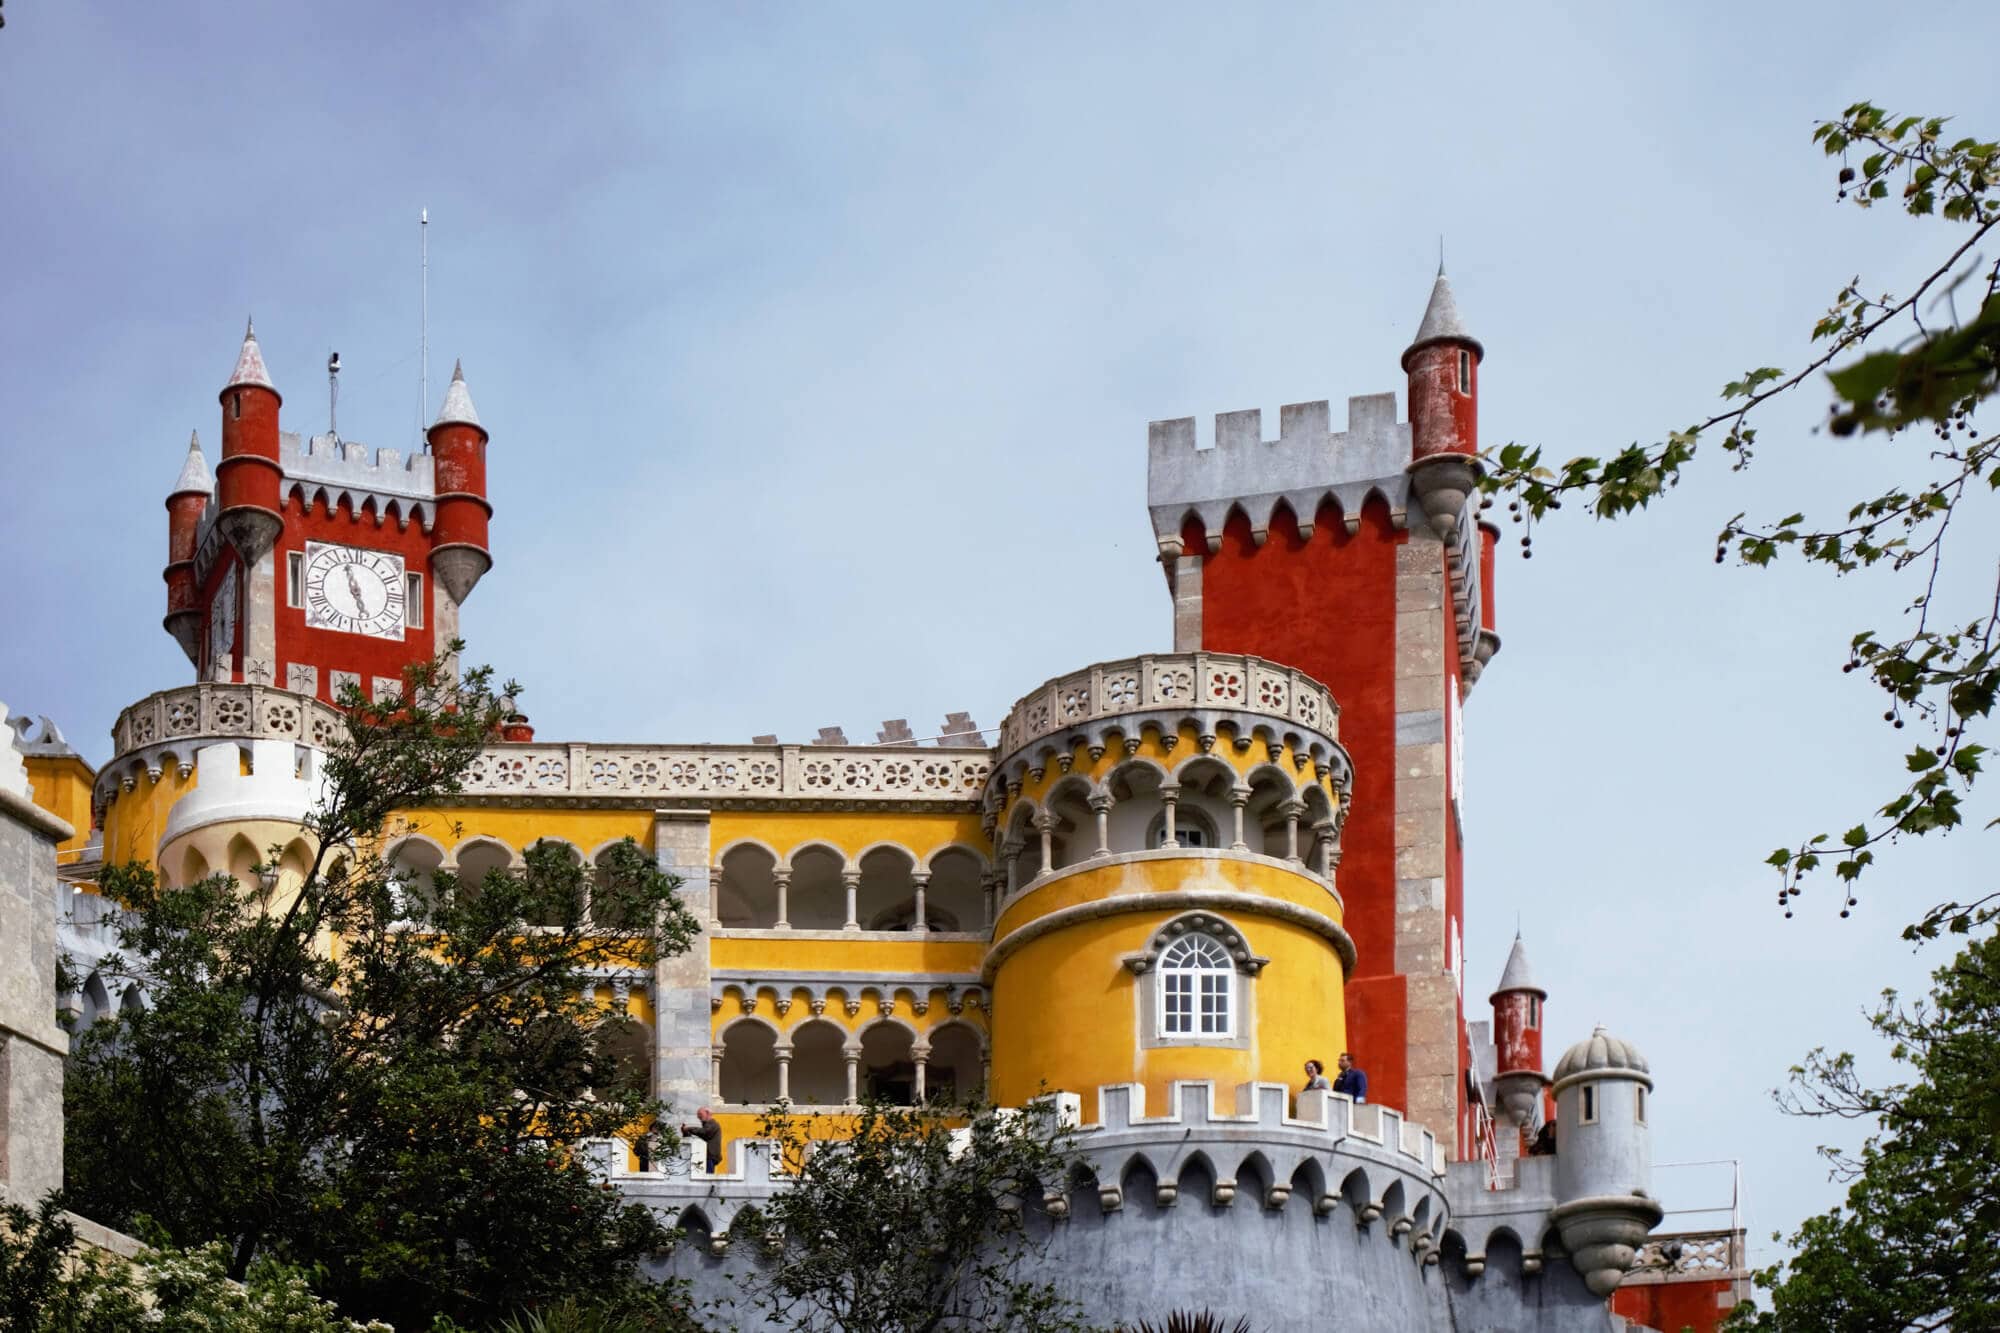 Pena Palace: Sintra’s Fairytale Castle